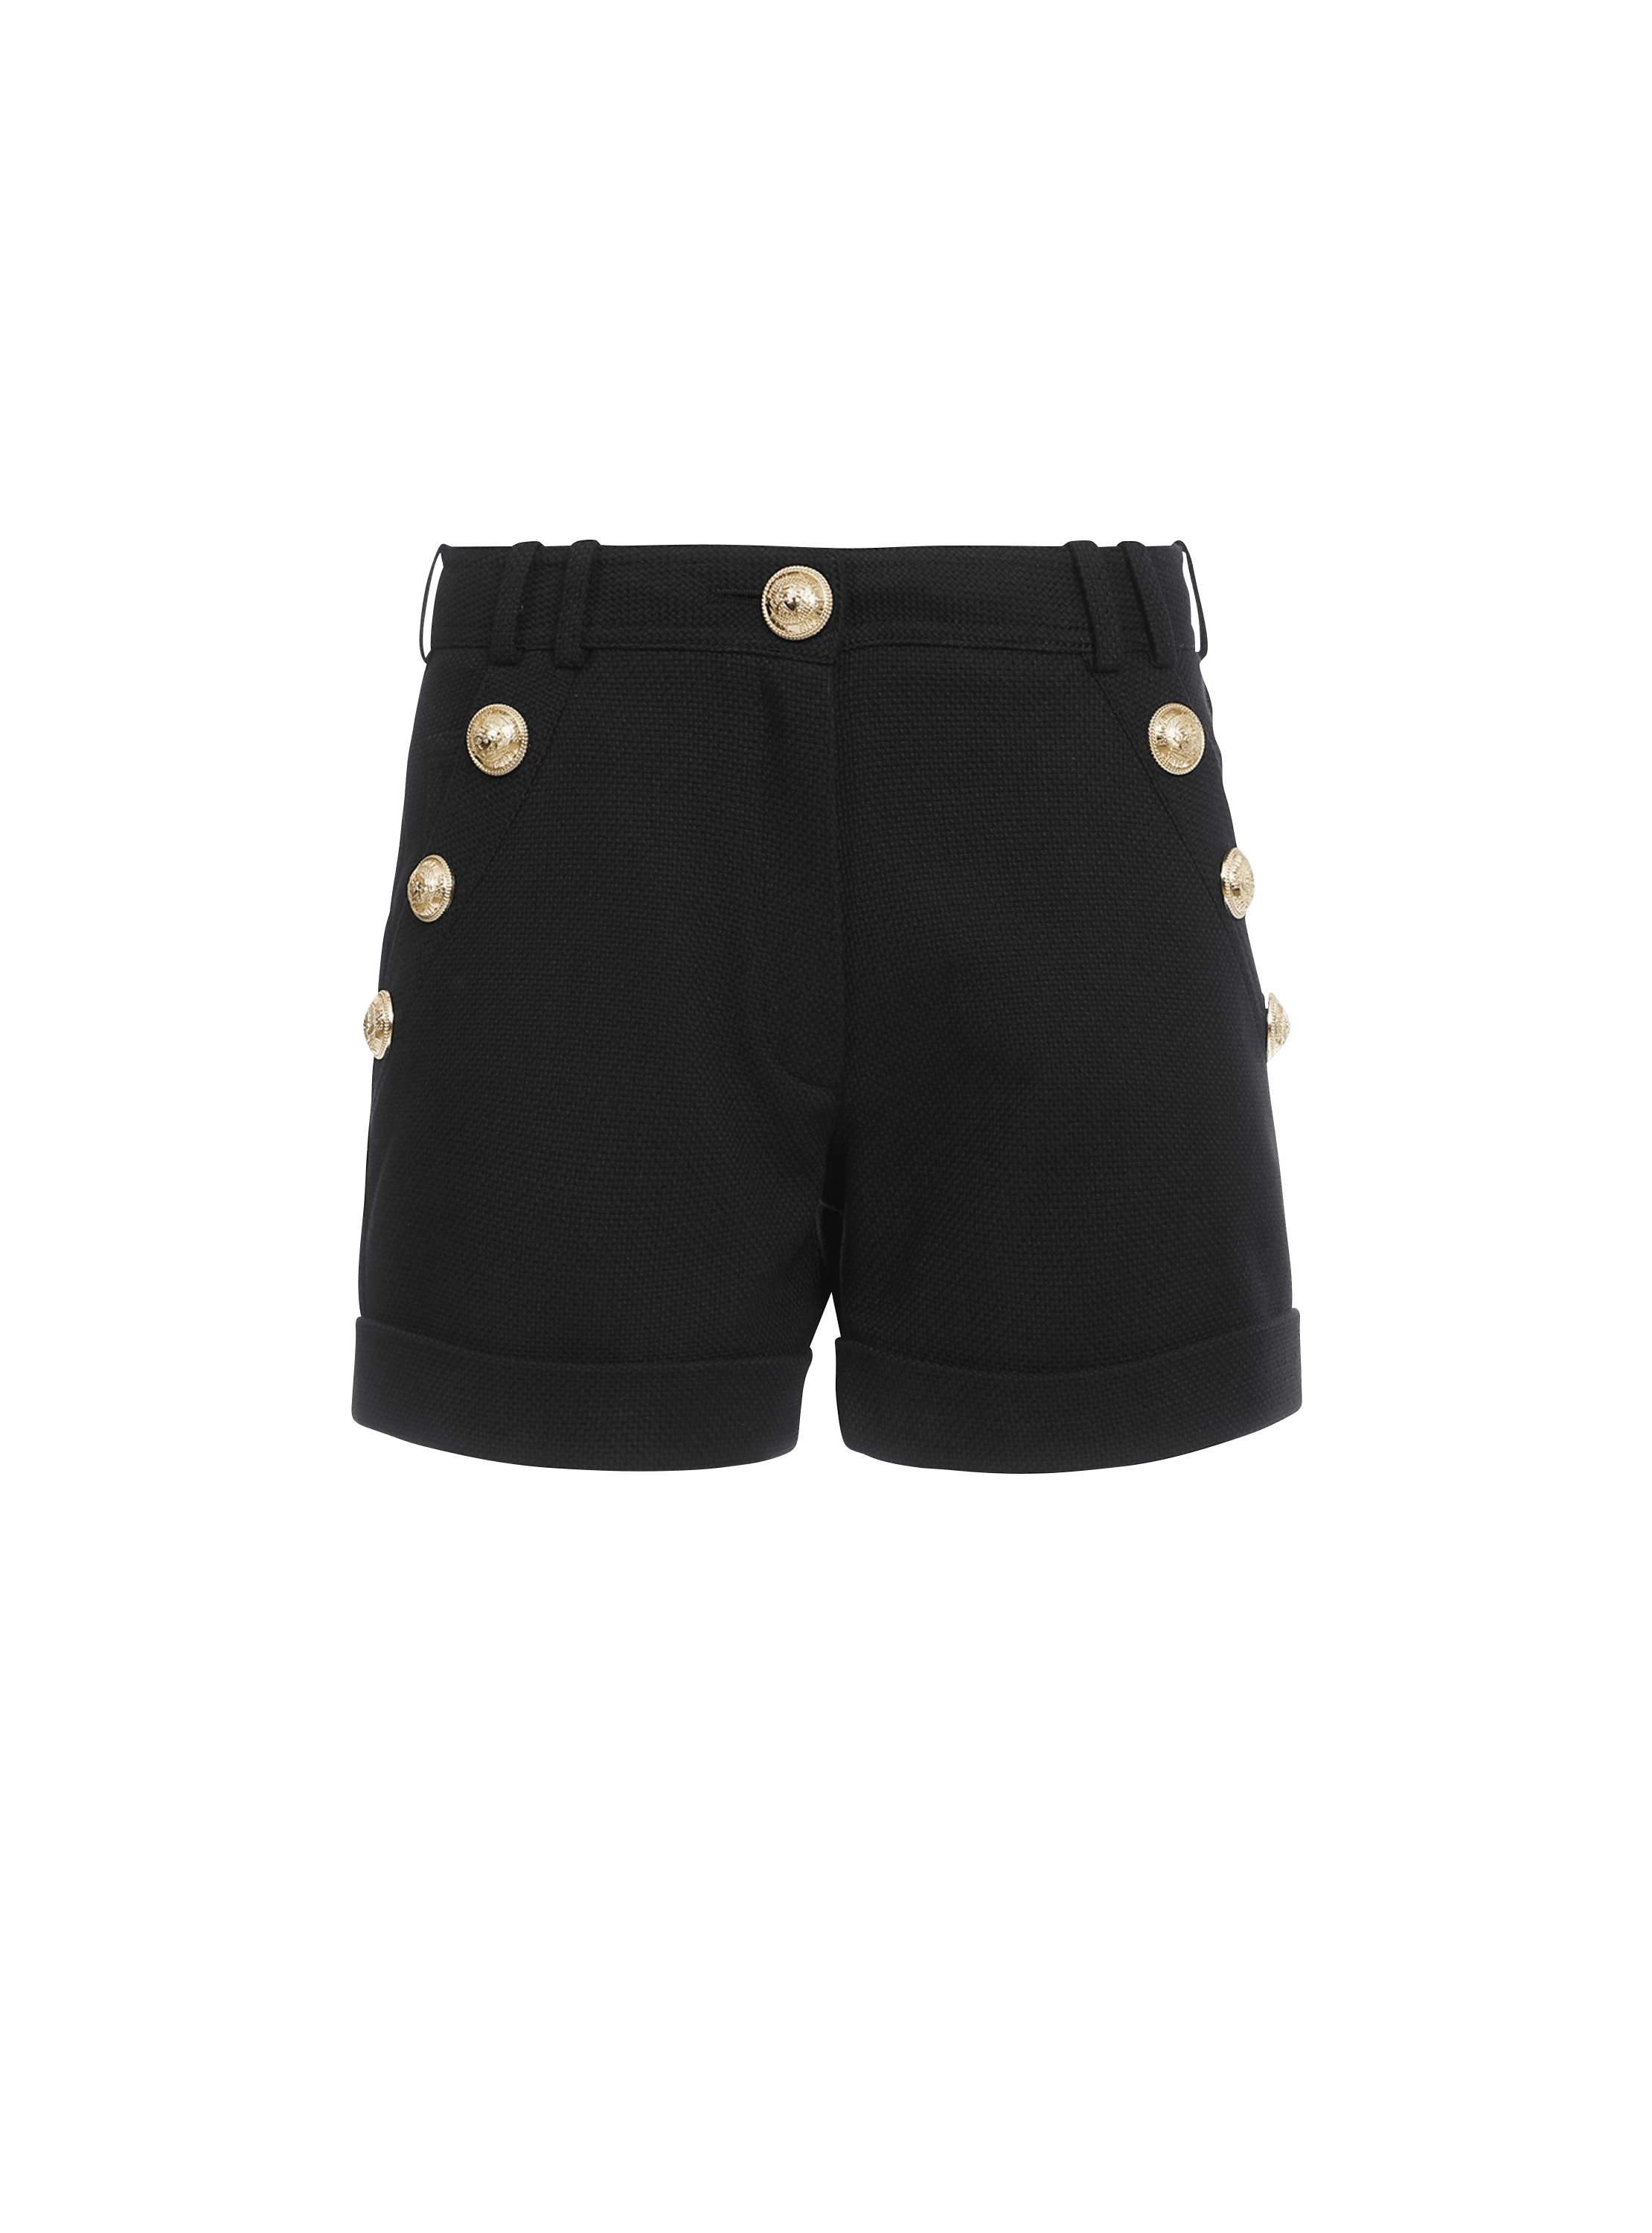 Cotton low-rise shorts